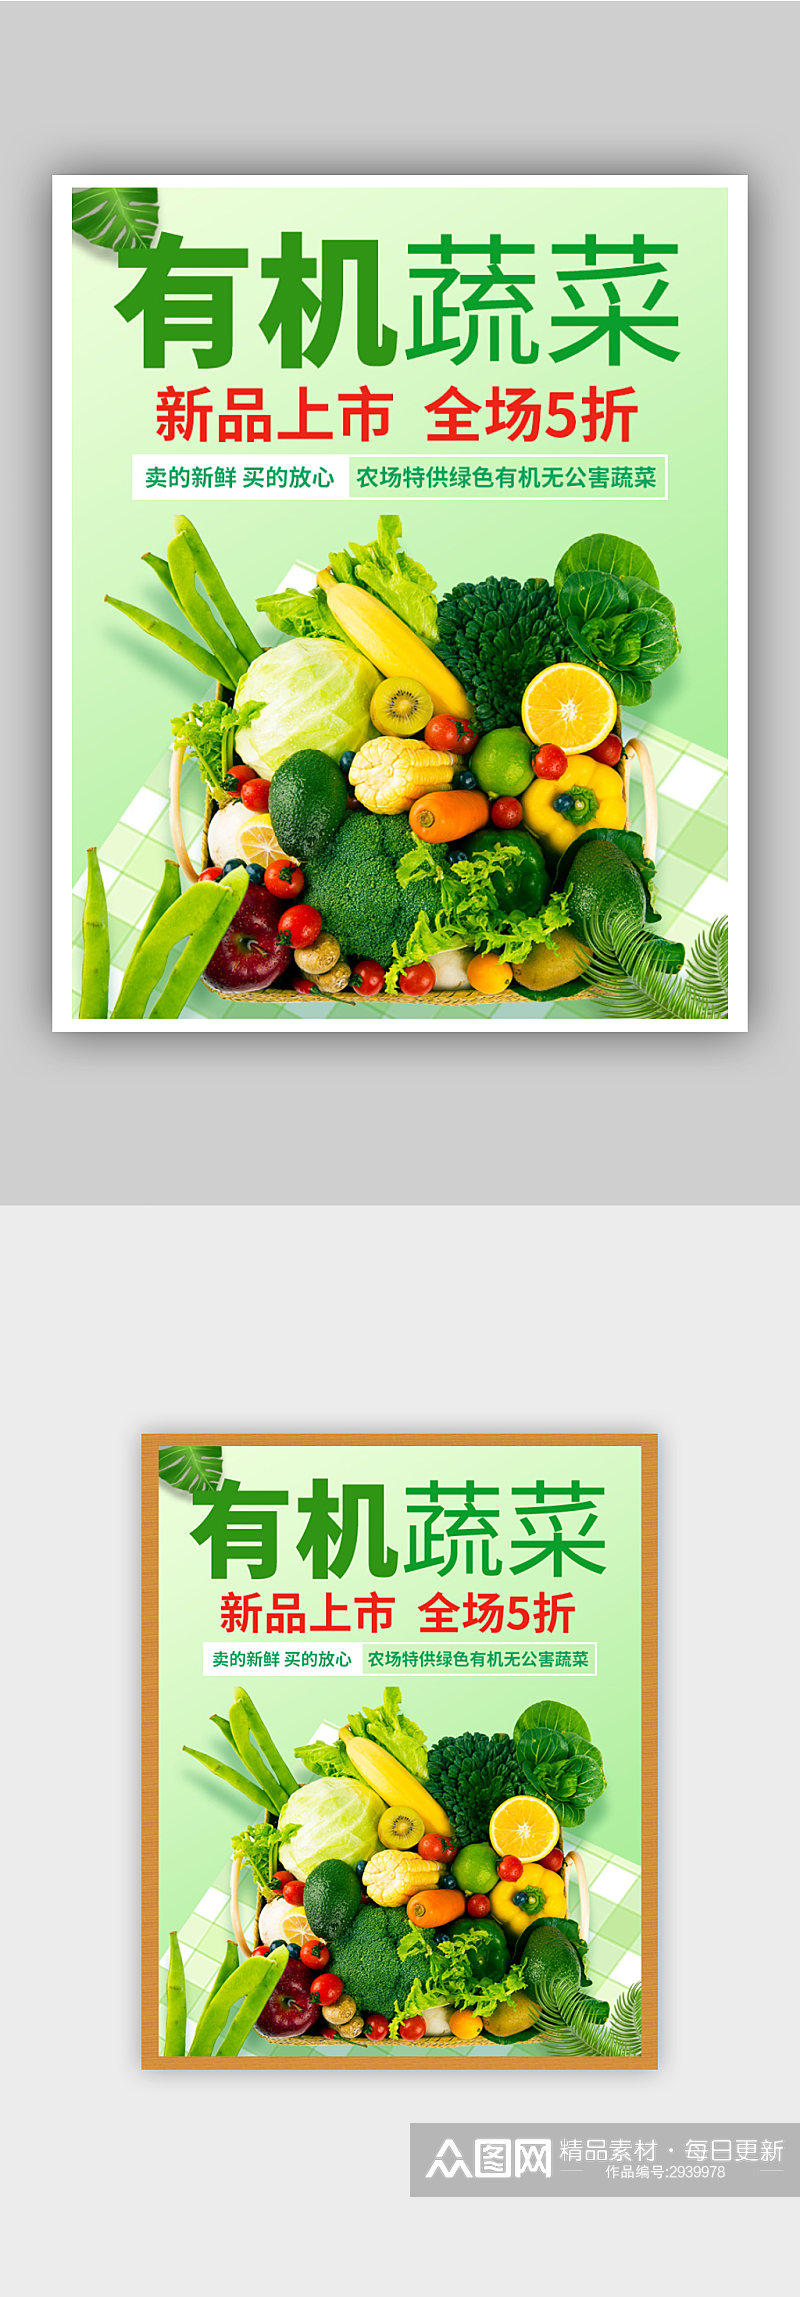 绿色有机蔬菜促销海报素材